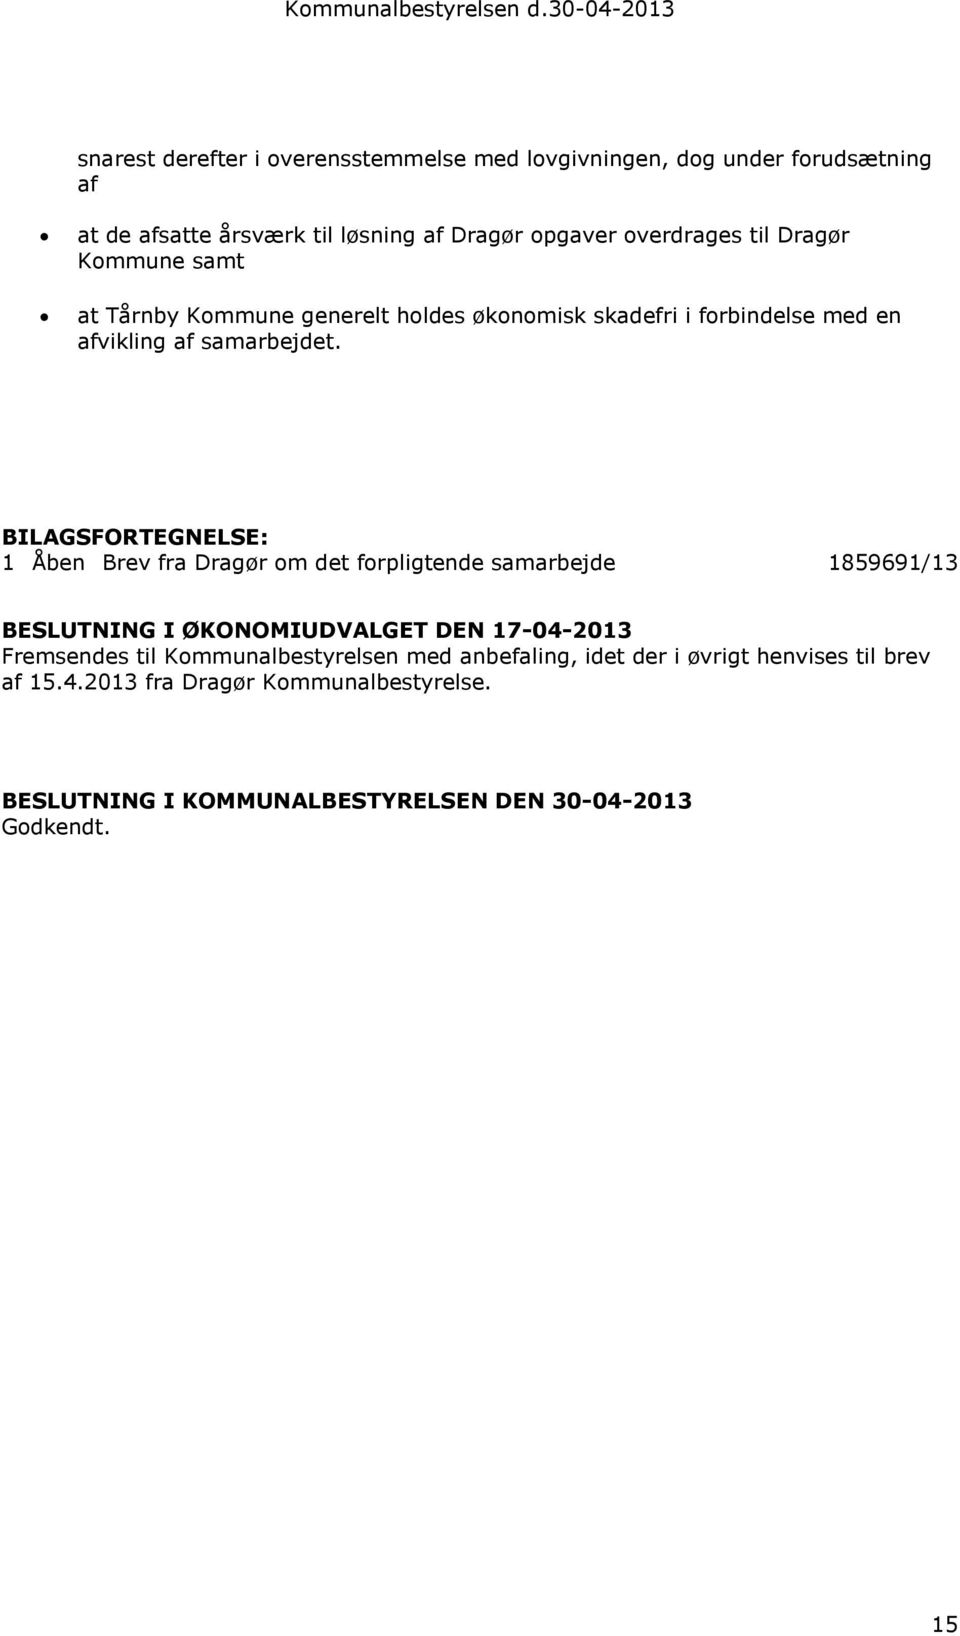 BILAGSFORTEGNELSE: 1 Åben Brev fra Dragør om det forpligtende samarbejde 1859691/13 BESLUTNING I ØKONOMIUDVALGET DEN 17-04-2013 Fremsendes til